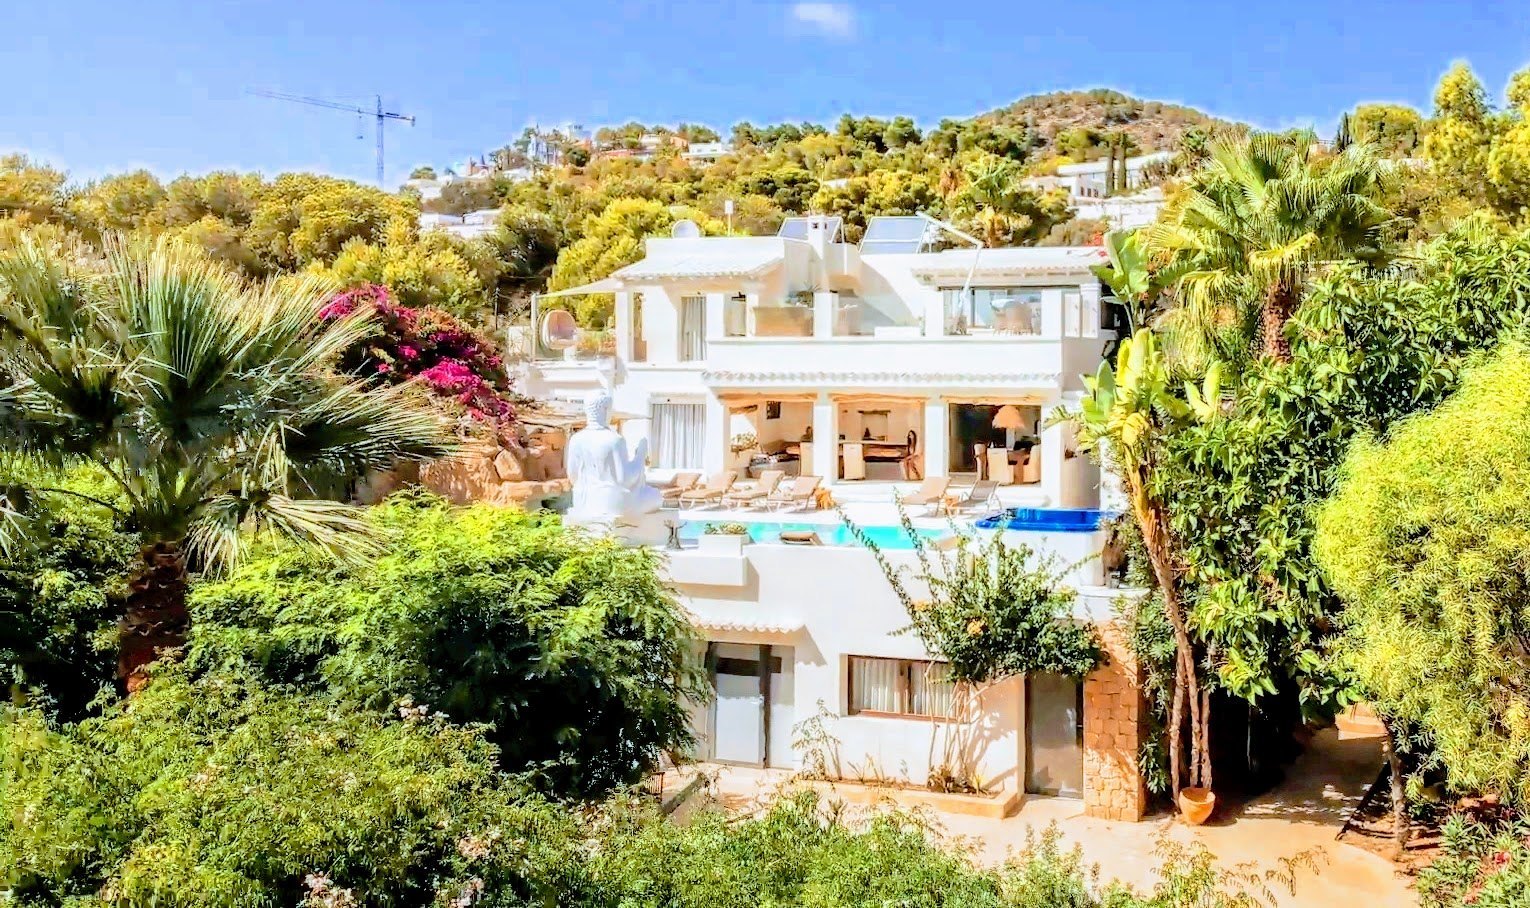 Luxury villa in Ibiza on the seafront